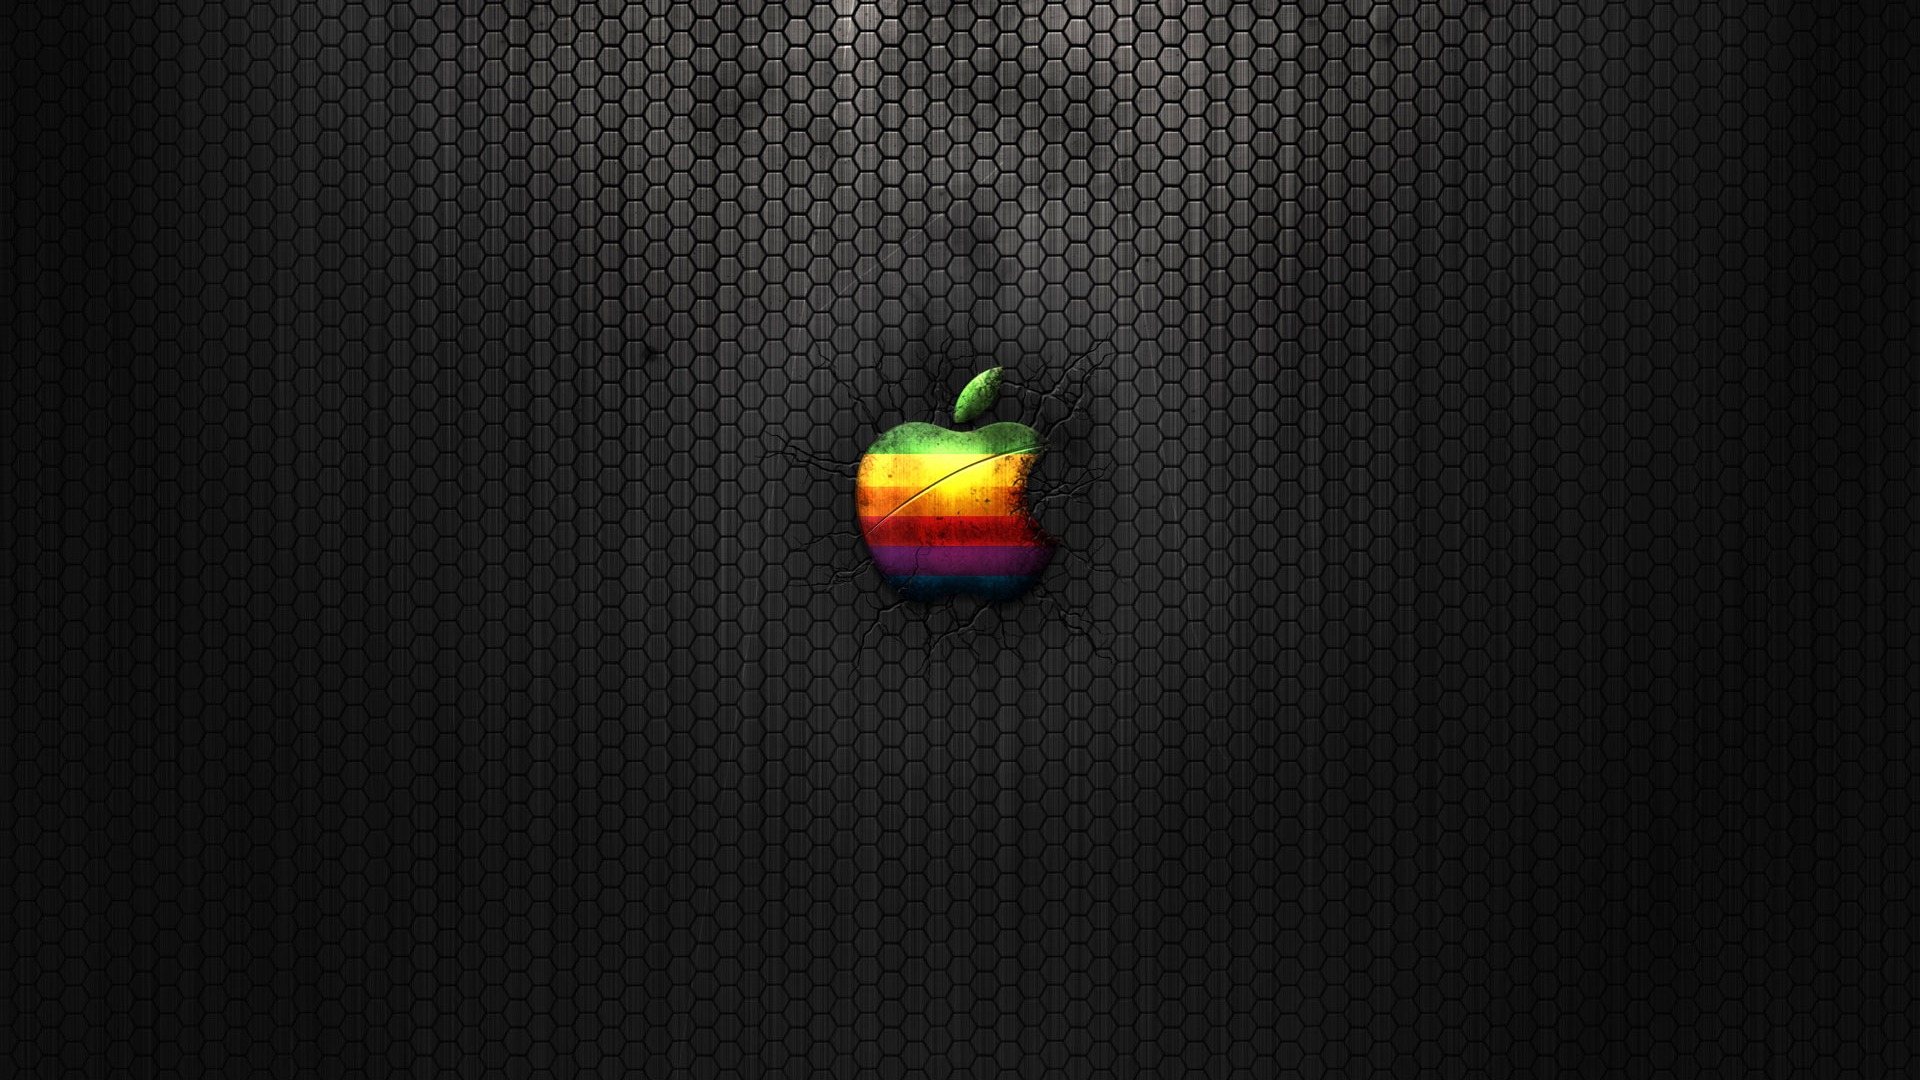 壁紙 Apple のロゴマークが入った壁紙 19x1080 壁紙 Appleの壁紙 1150 アップル ロゴ Naver まとめ